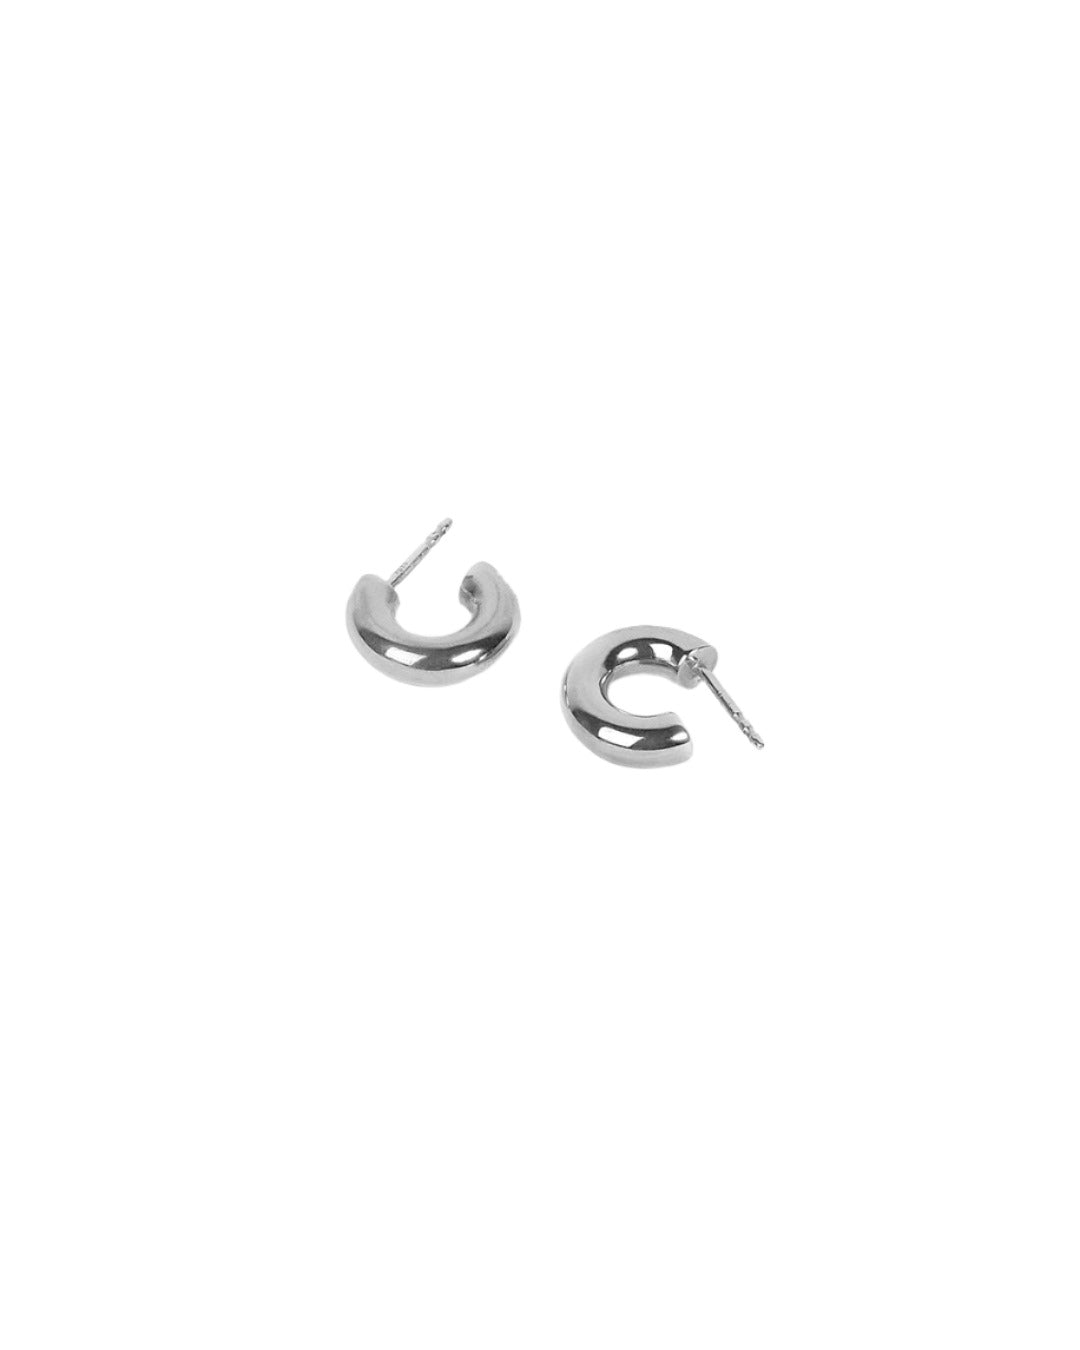 Handmade Simple silver hoops earrings - Bold Form Hoops - NEEO